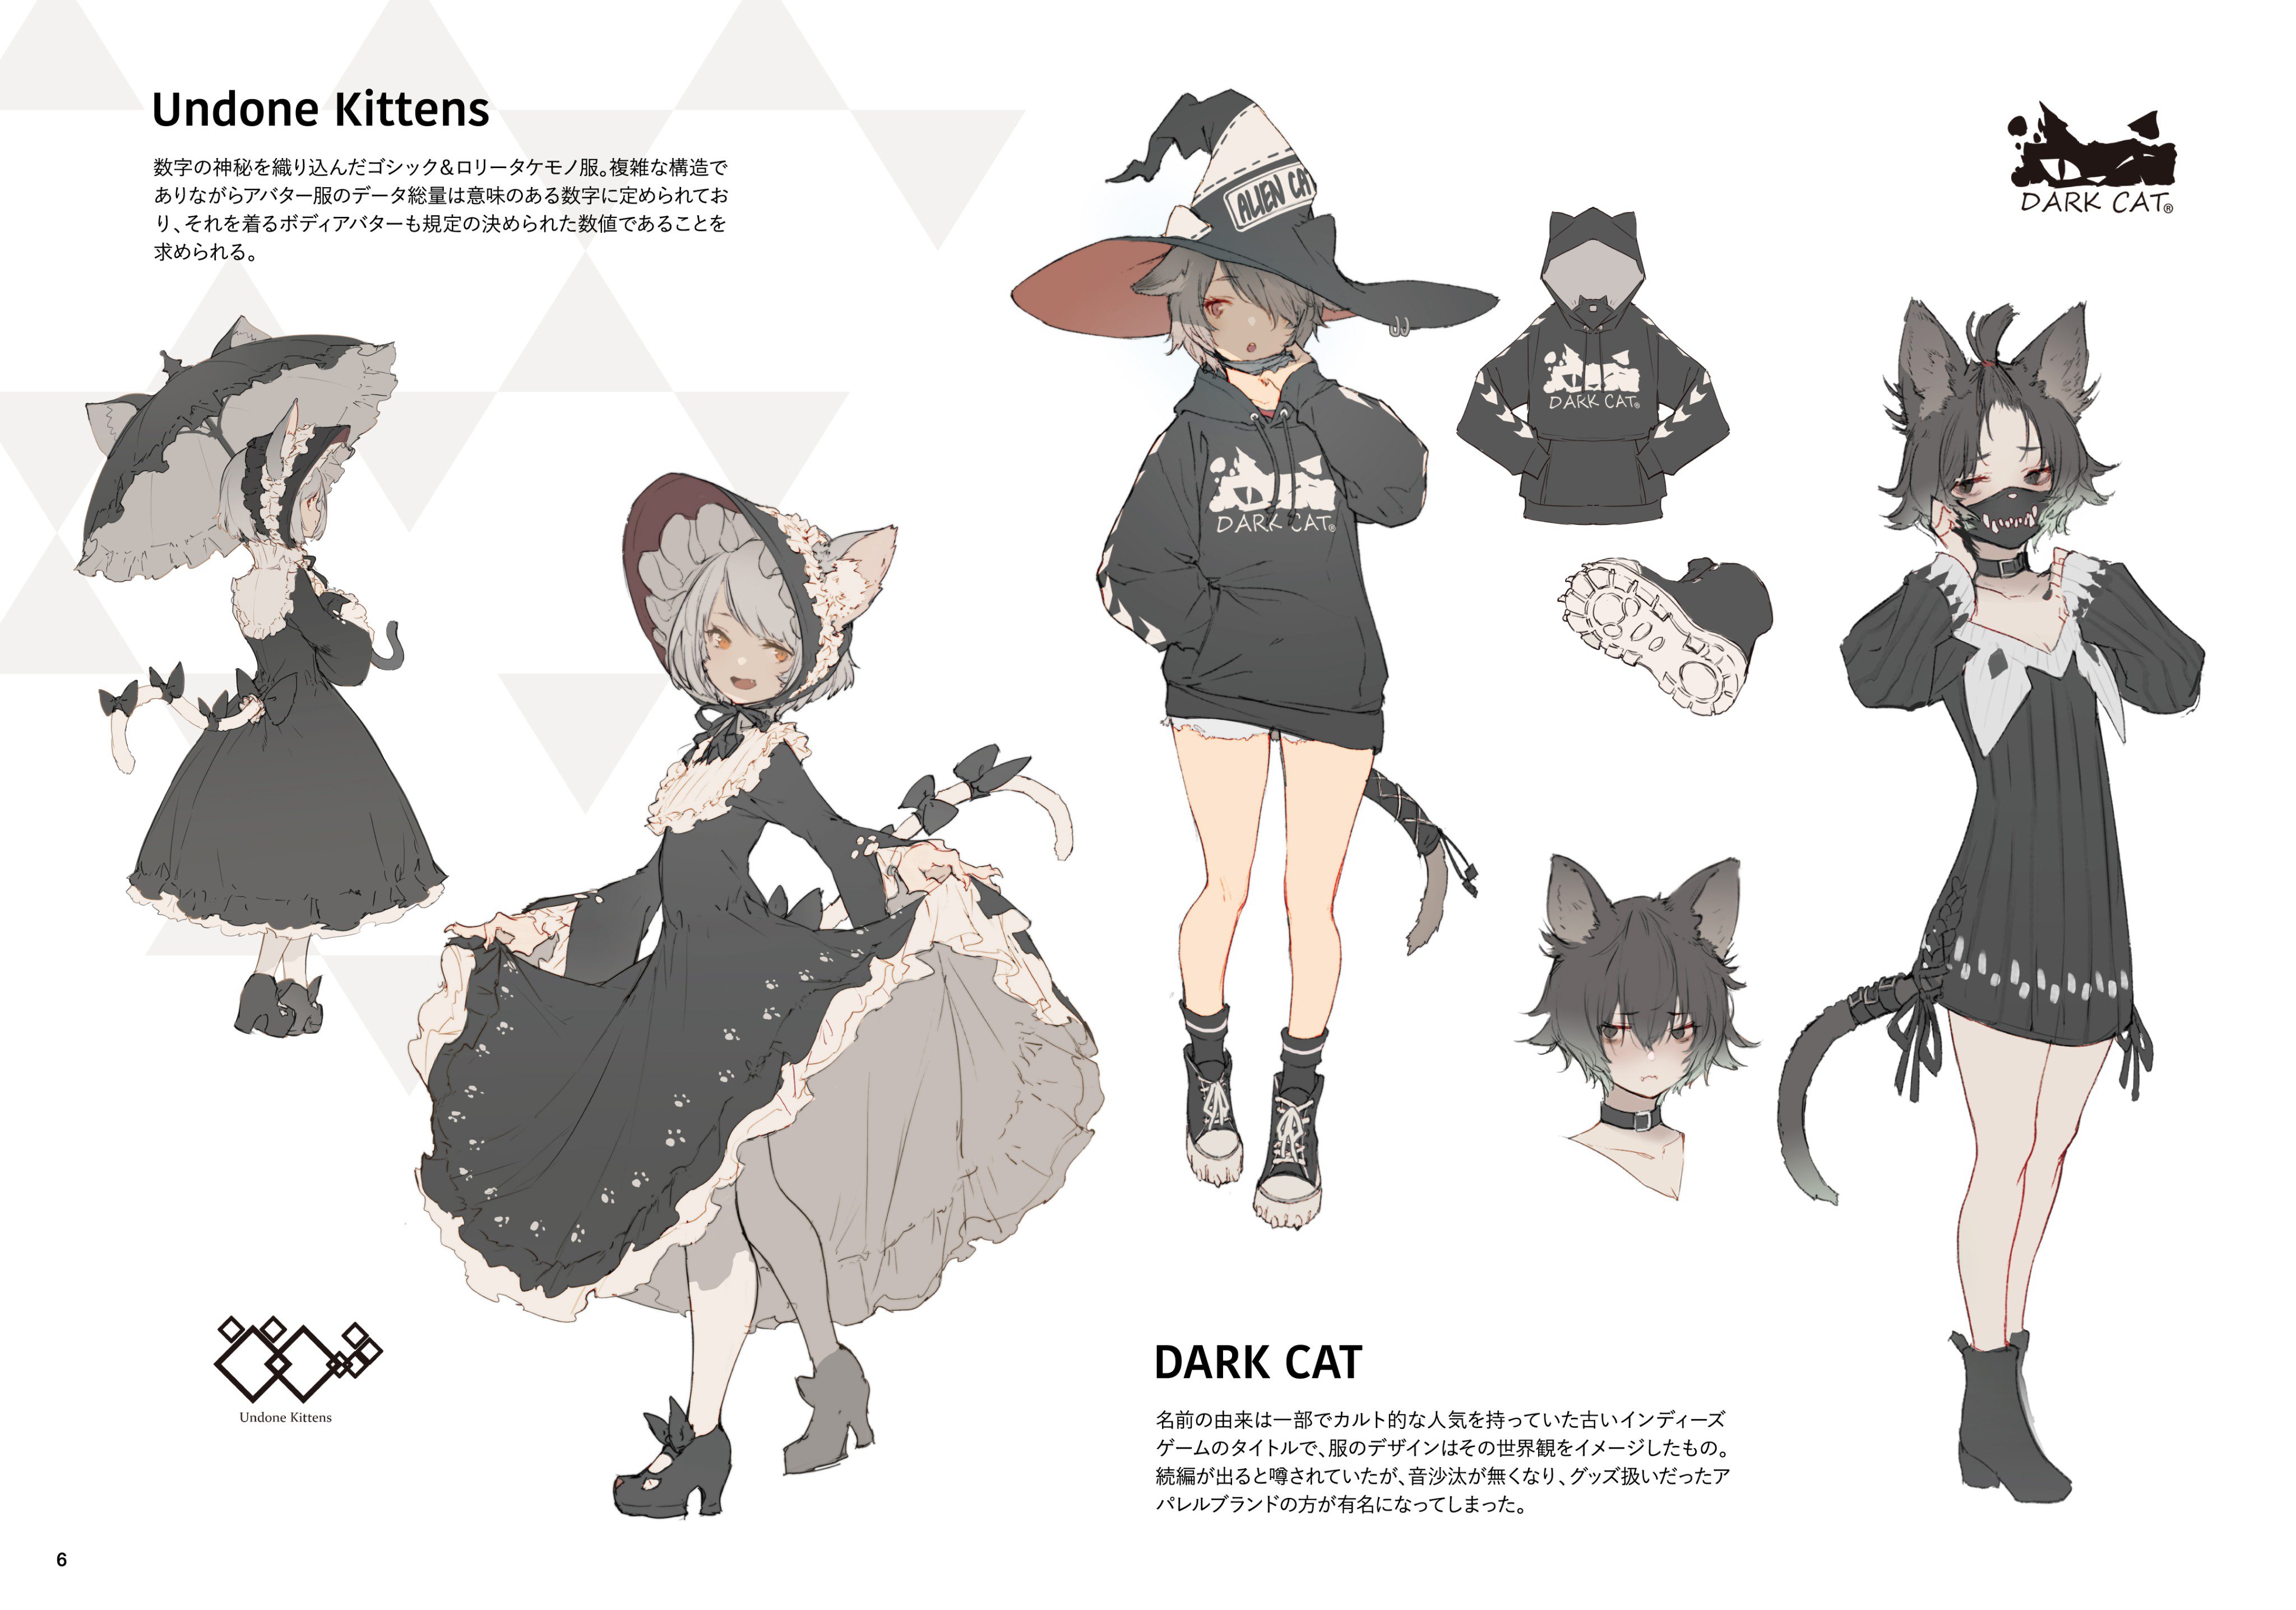 Hisadake ケモノファブリック アパレルブランド解説 Dark Cat は元々インディーズrpgゲーム の特典的なアバター服だったが何年経ってもゲームの続編が出ず 服の方が有名に ゲームはやったことがないけど着ている子も多い T Co Hqi7v5xqzv